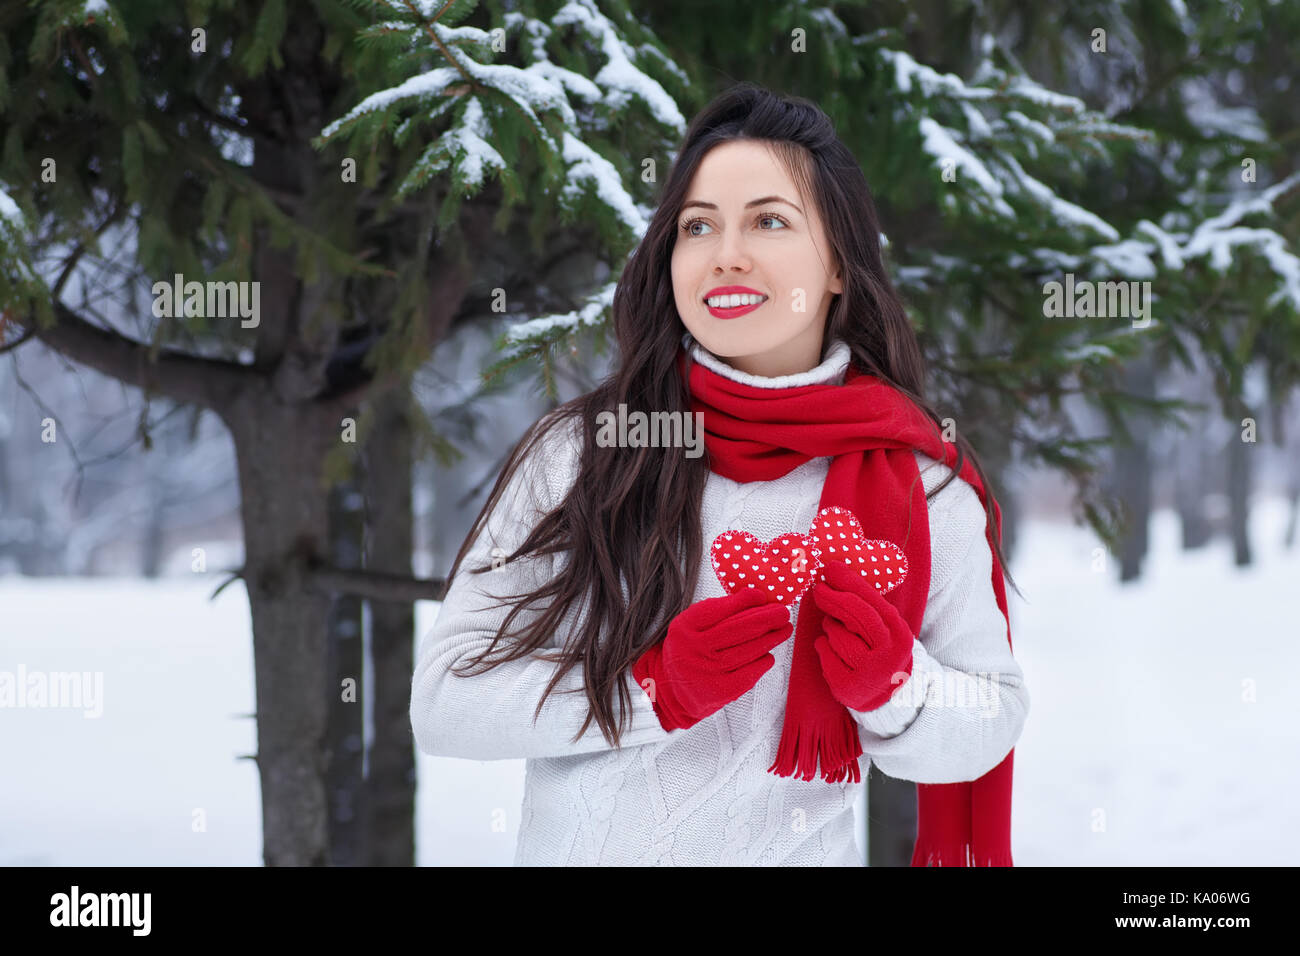 Mädchen im Winter Wald mit roten Herzen in die Hände. Winterurlaub, Valentinstag, Personen Konzept. Winter outdoor Porträt der jungen Frau in Pullover Stockfoto